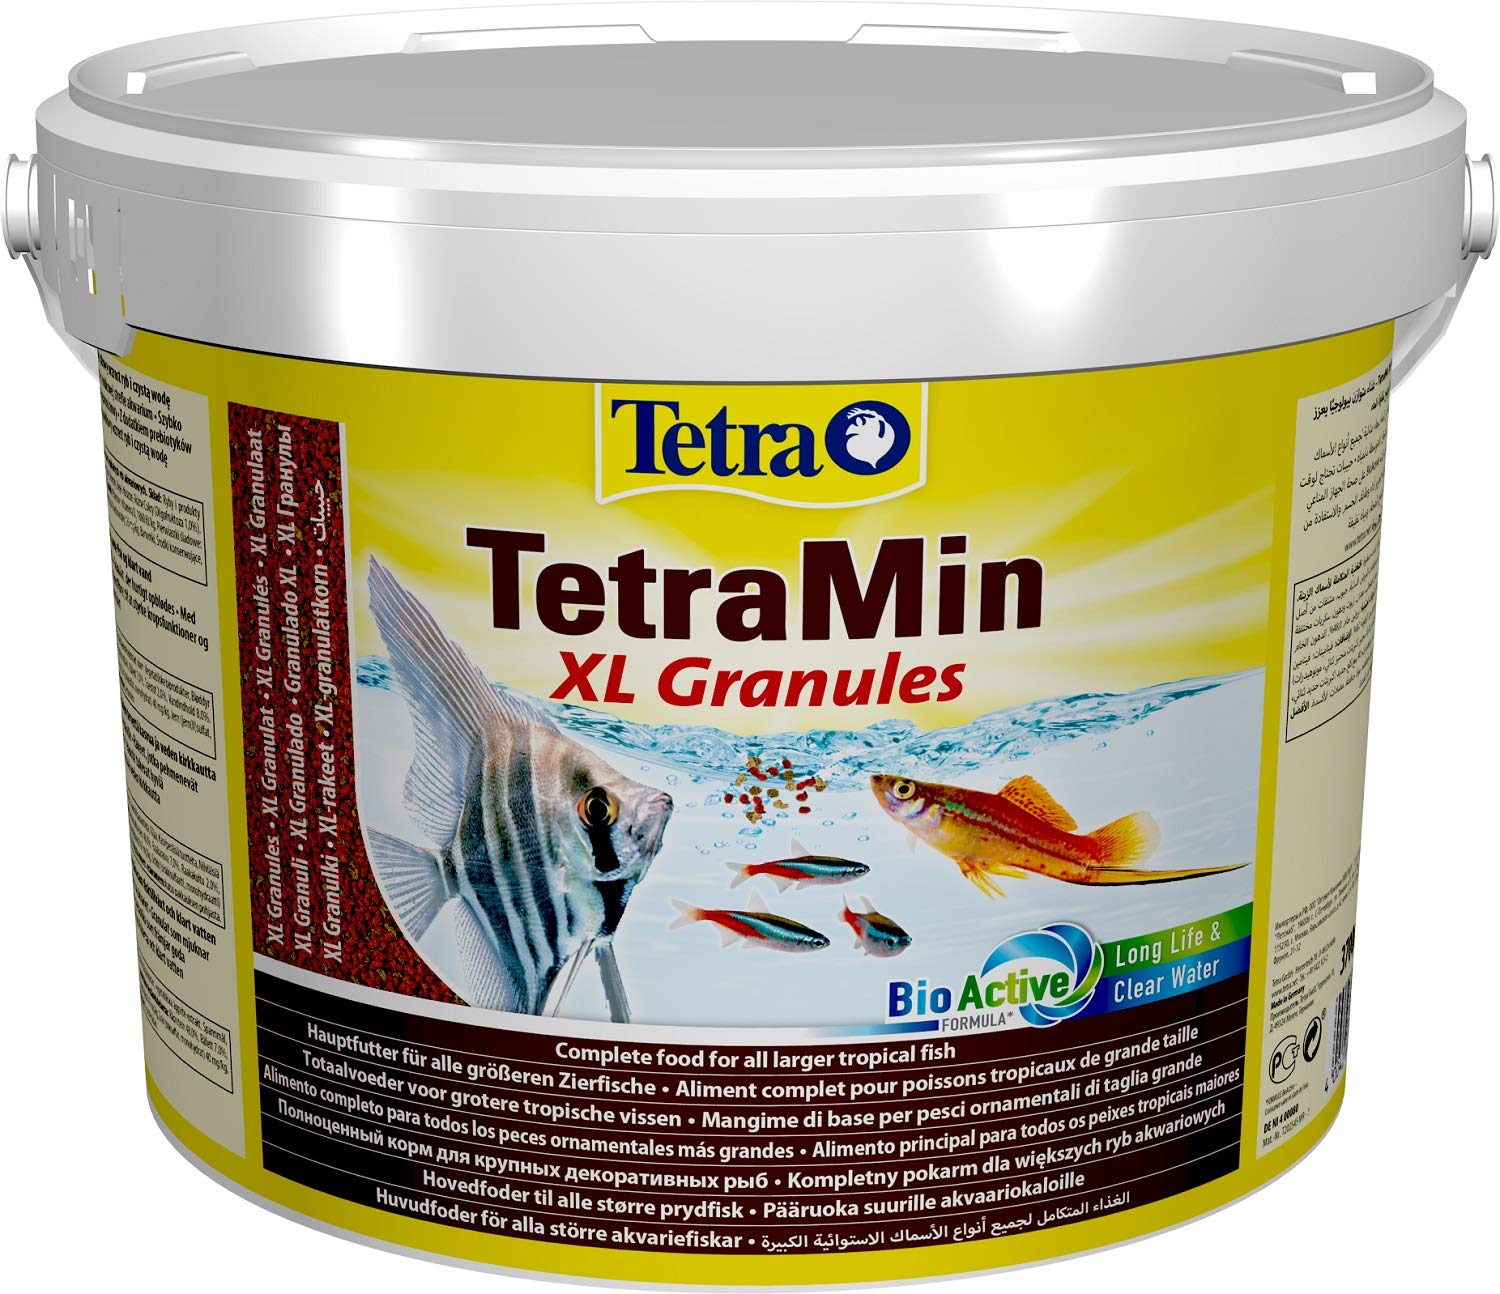 TetraMin XL Granules - langsam absinkendes Fischfutter für größere Zierfische in der mittleren Wasserschicht des Aquariums, 10 Liter Eimer